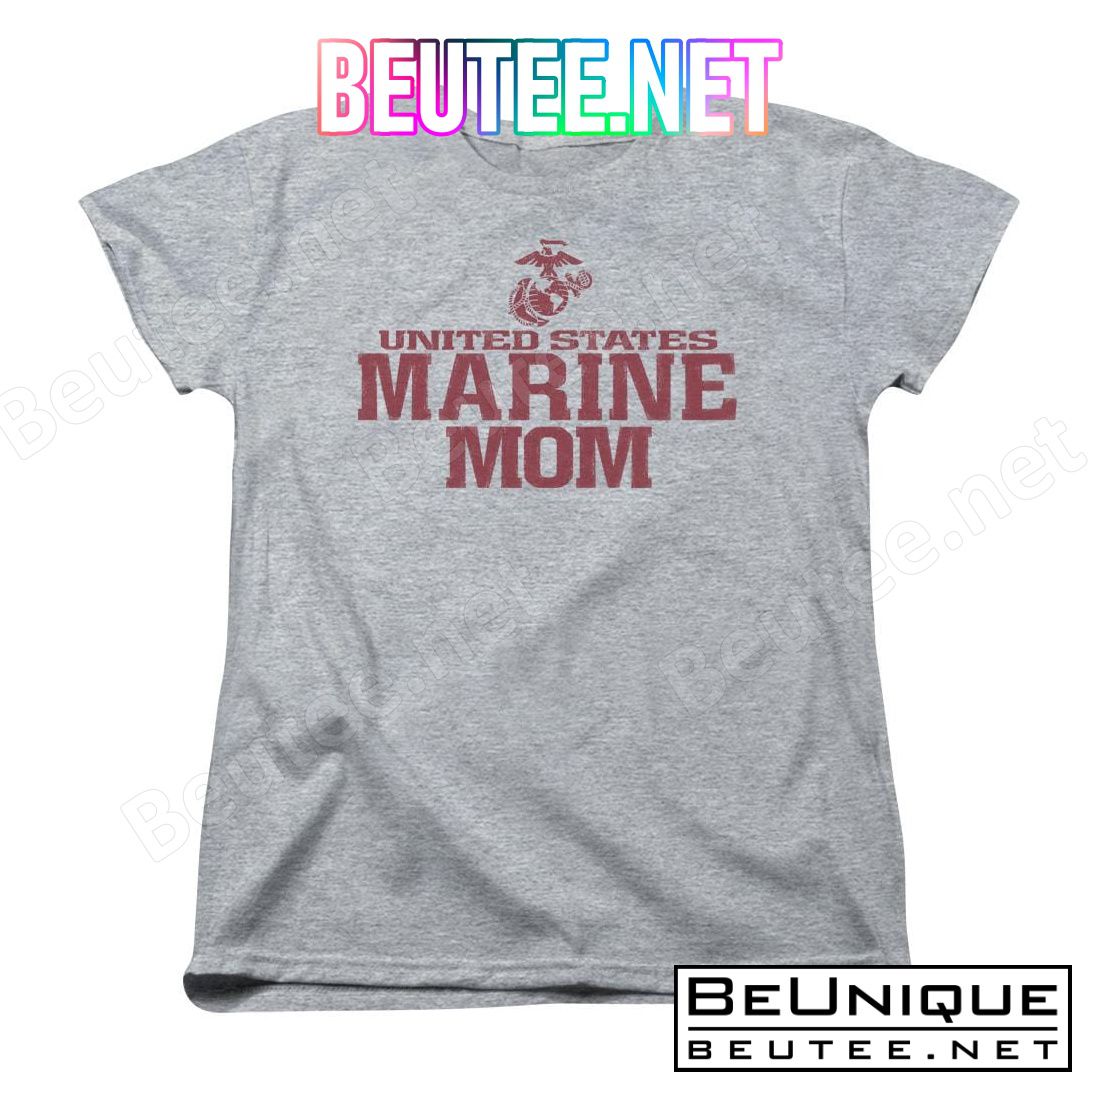 U.S. Marine Corps Marine Family Shirt